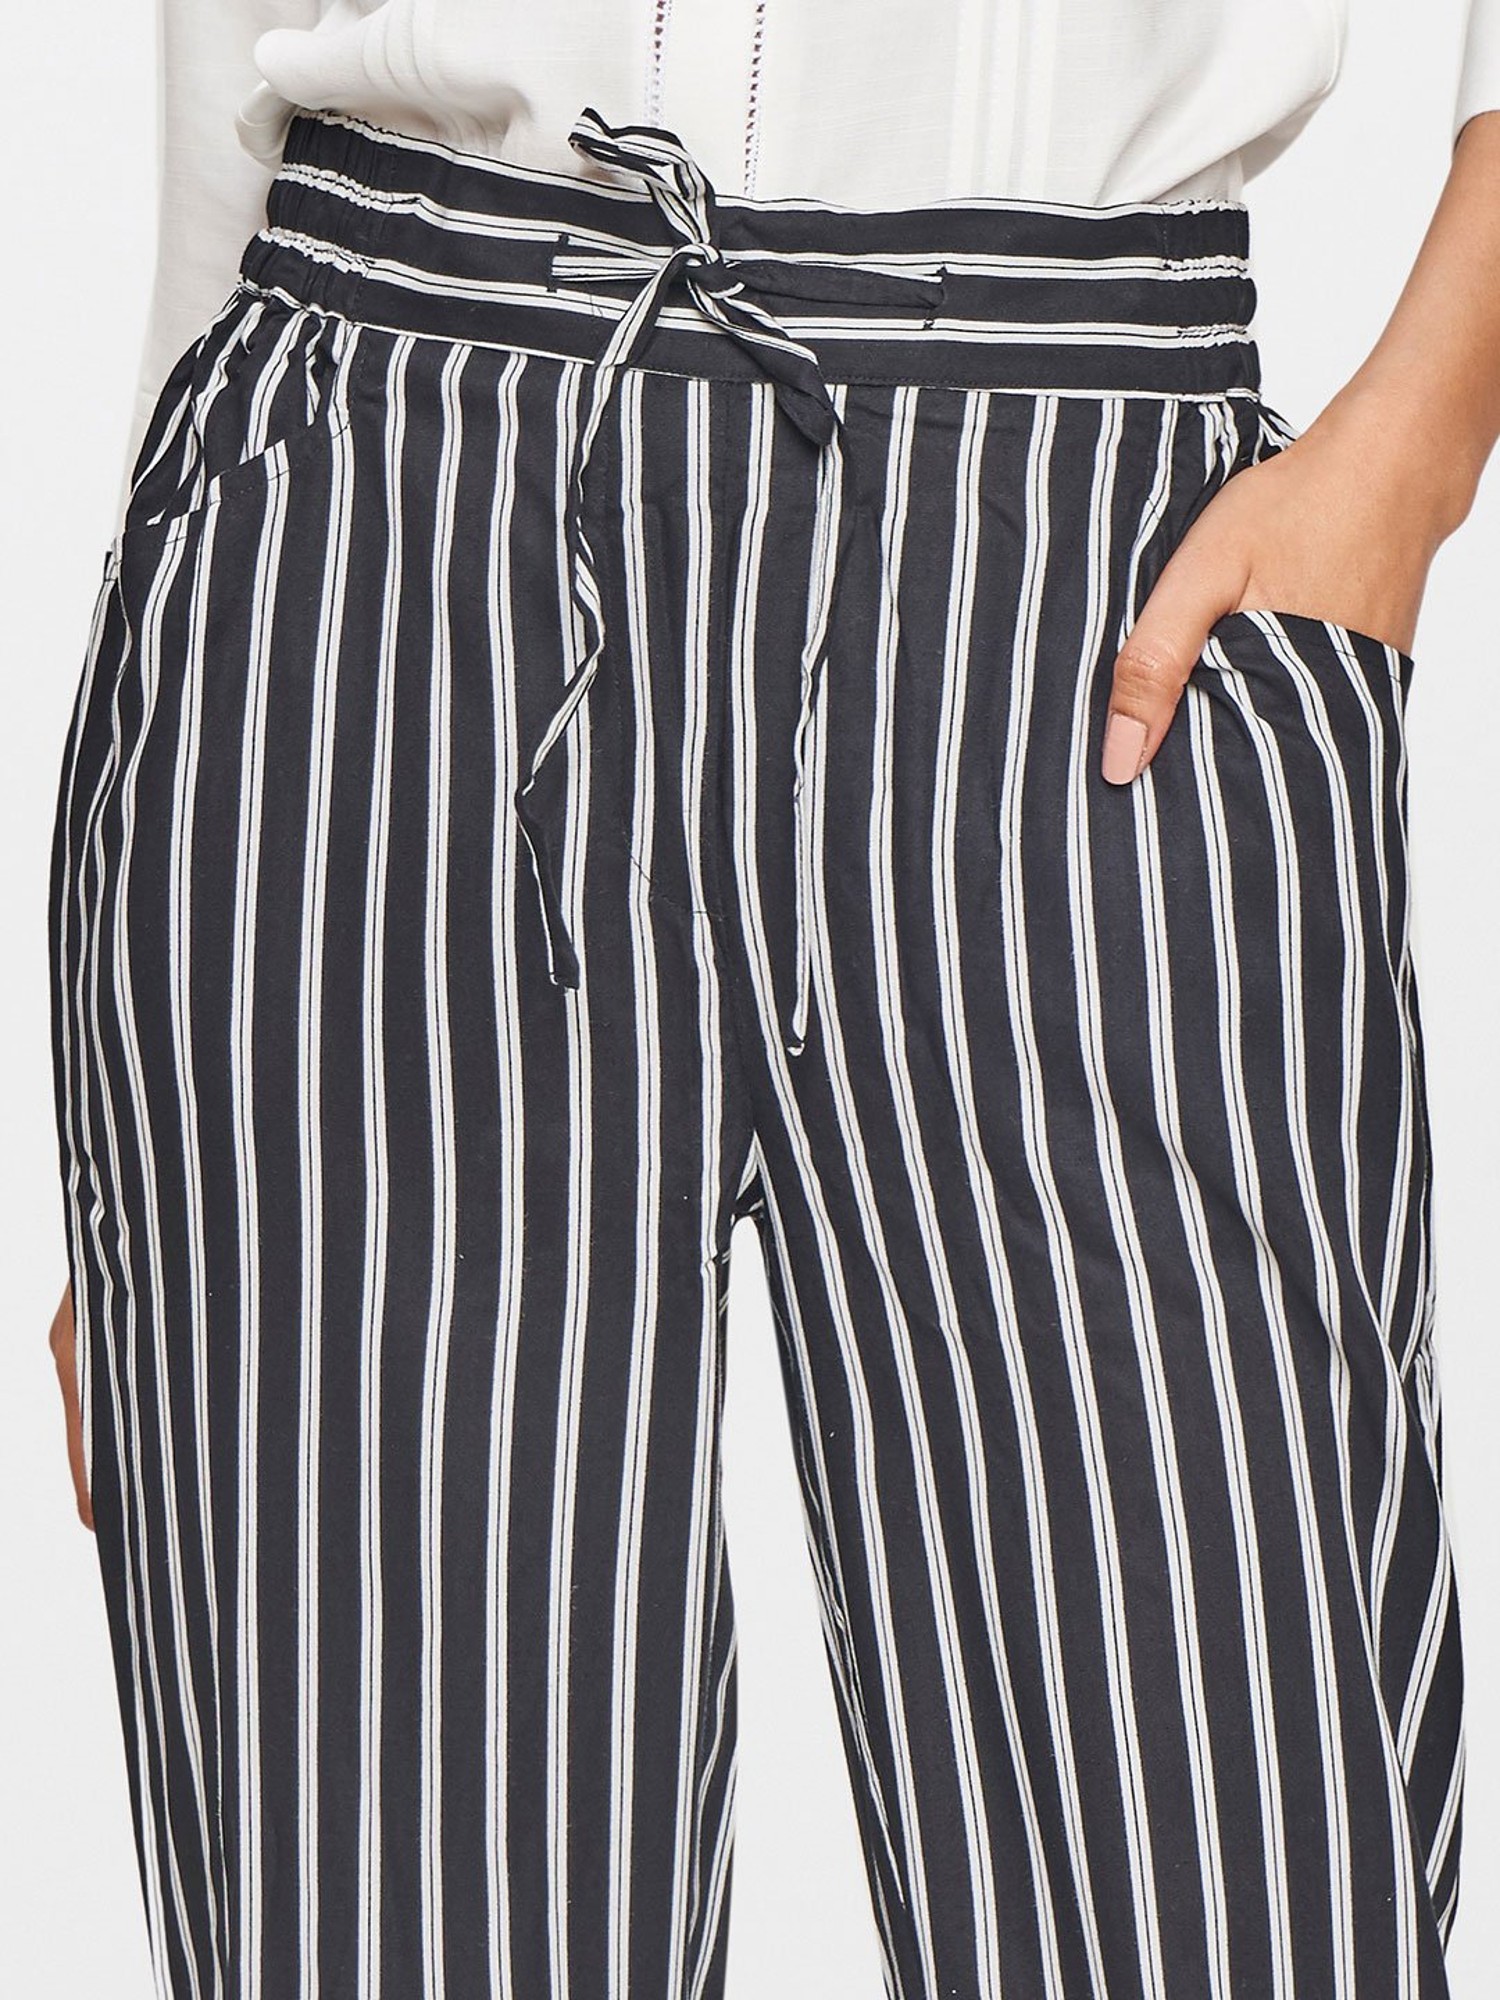 Buy Forever 21 Black  White Striped Pants for Women Online  Tata CLiQ